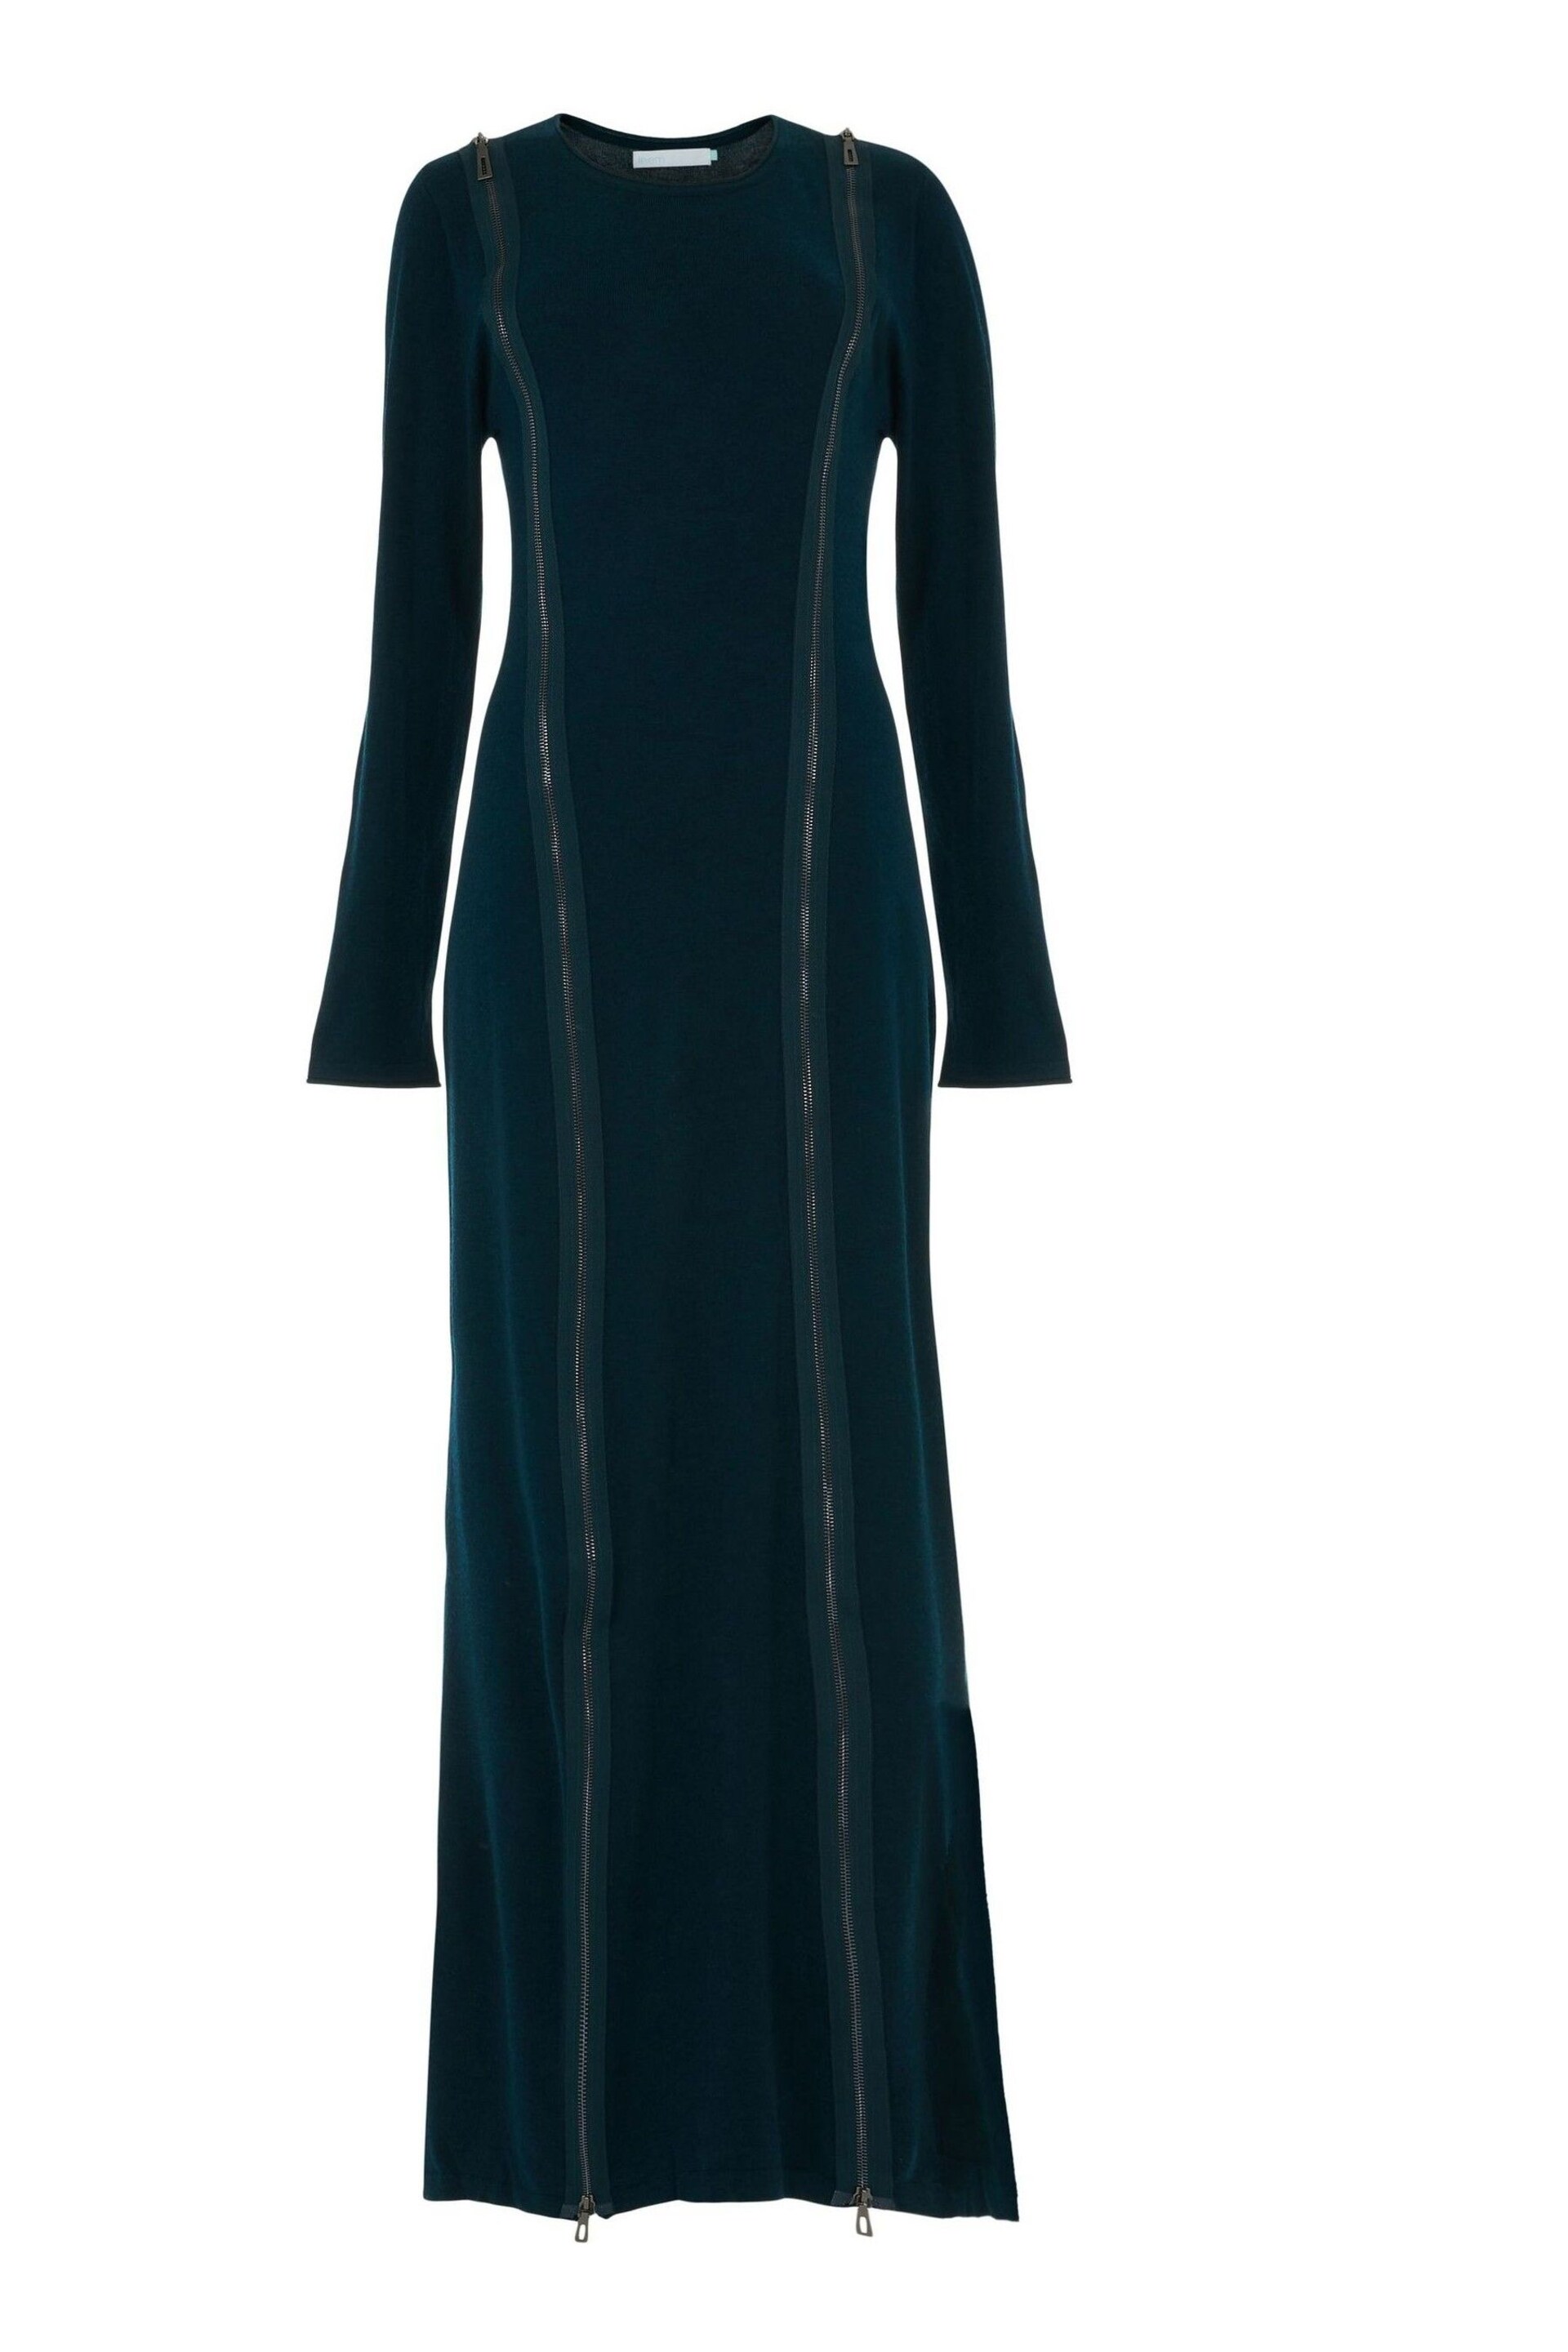 leem Green Full-Length Knitted Dress - Image 6 of 6